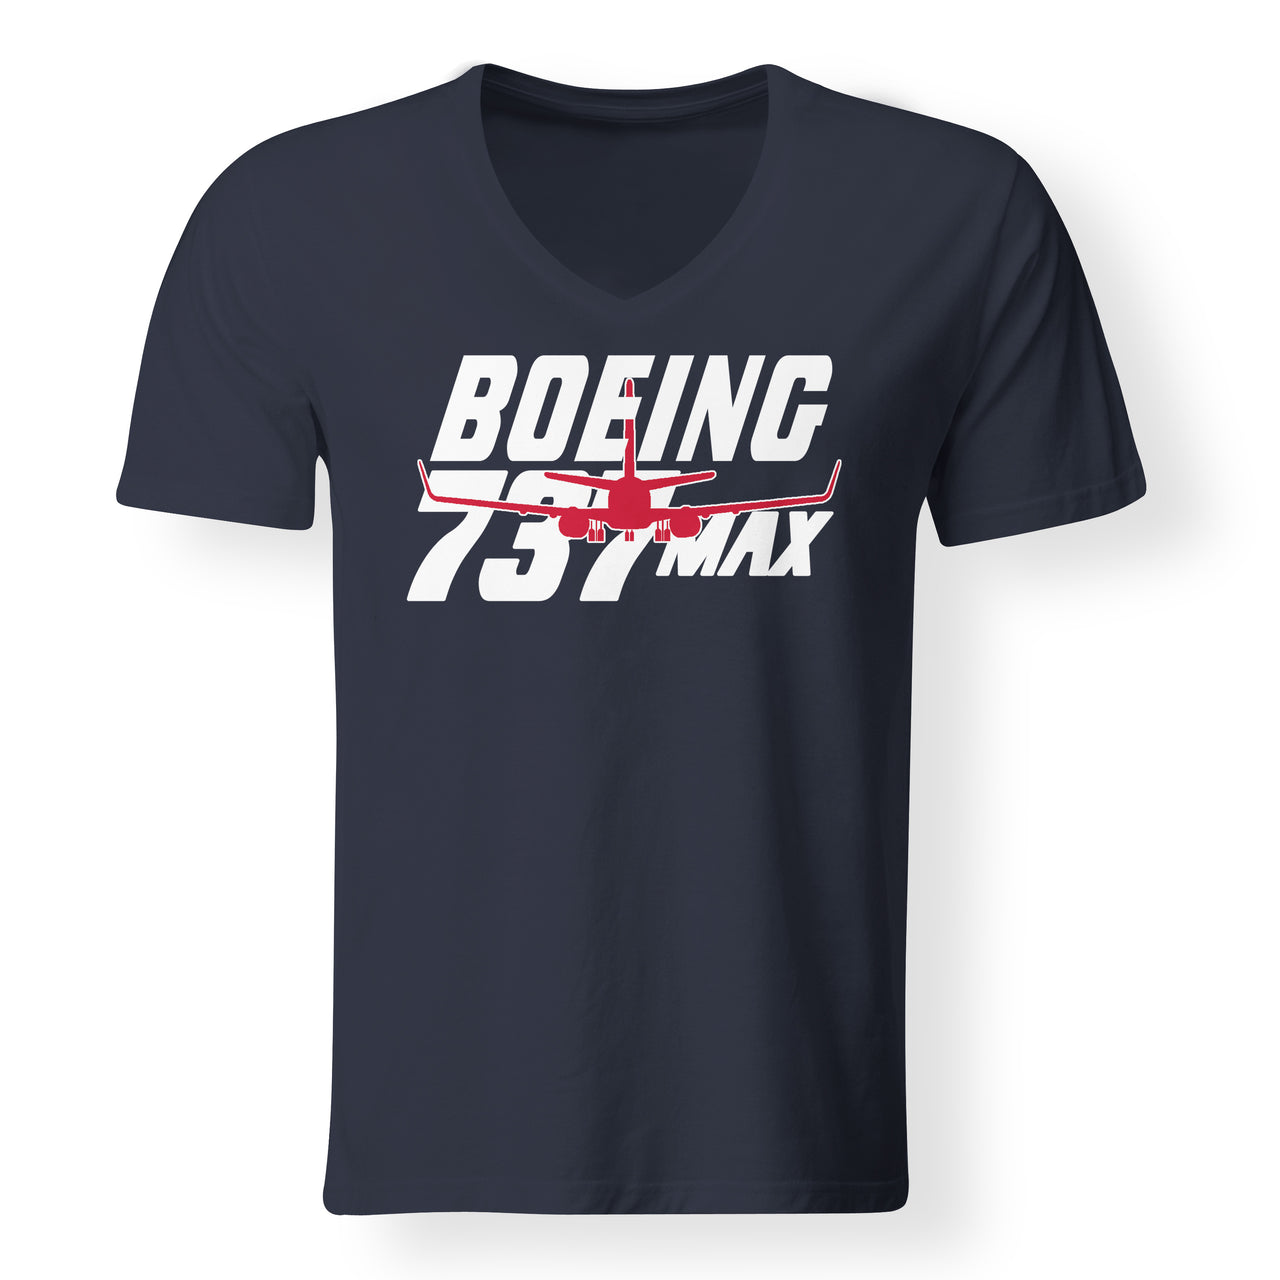 Amazing 737 Max Designed V-Neck T-Shirts